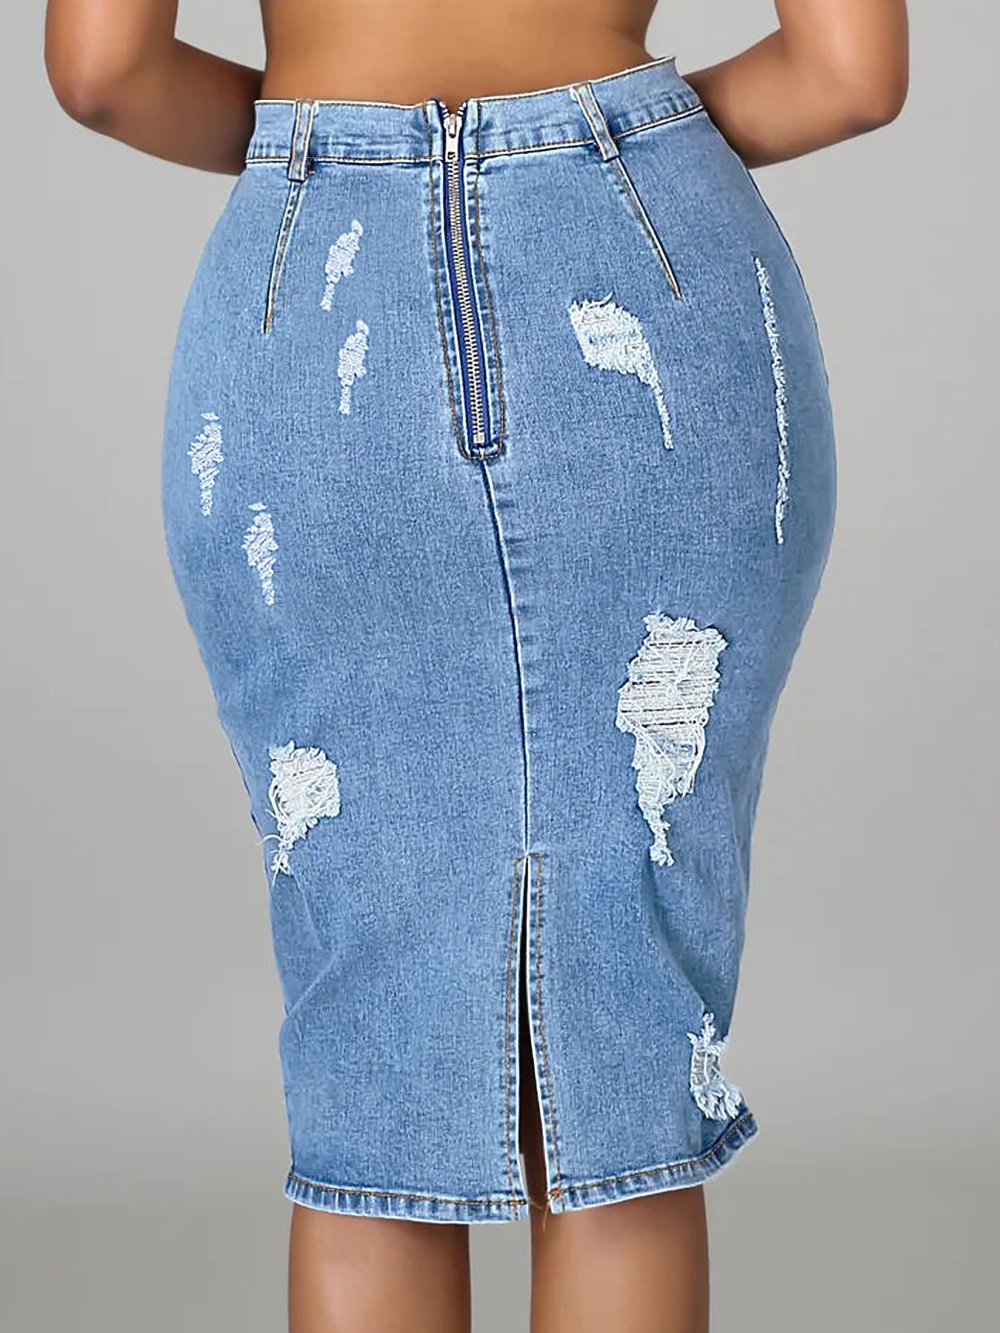 Street denim package hip holes short skirt for women